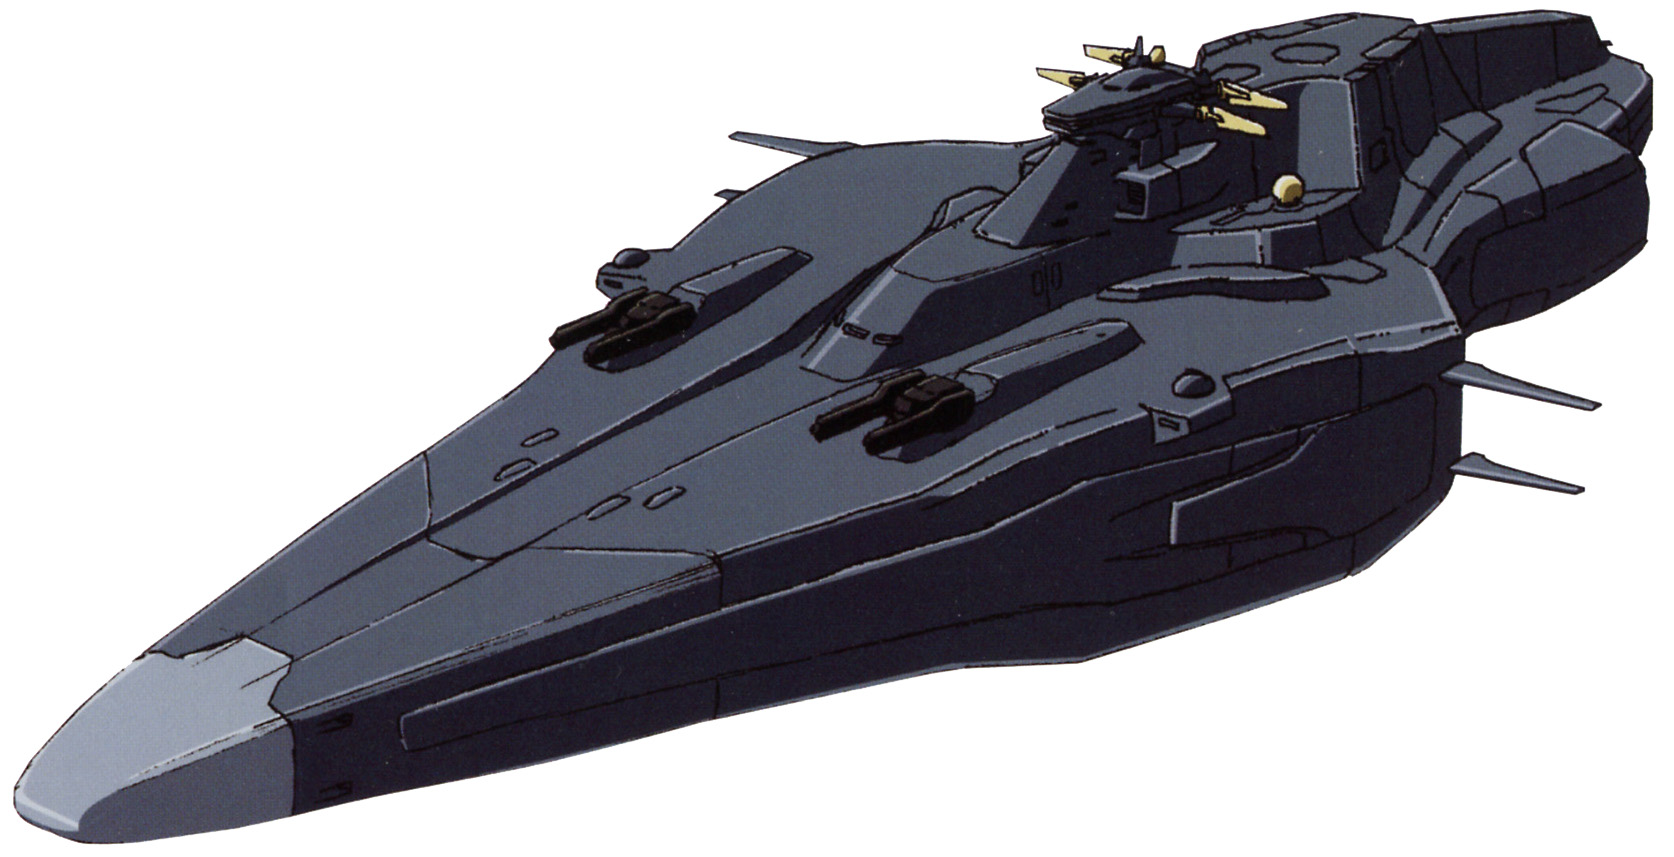 Agamemnon-class | The Gundam Wiki | Fandom